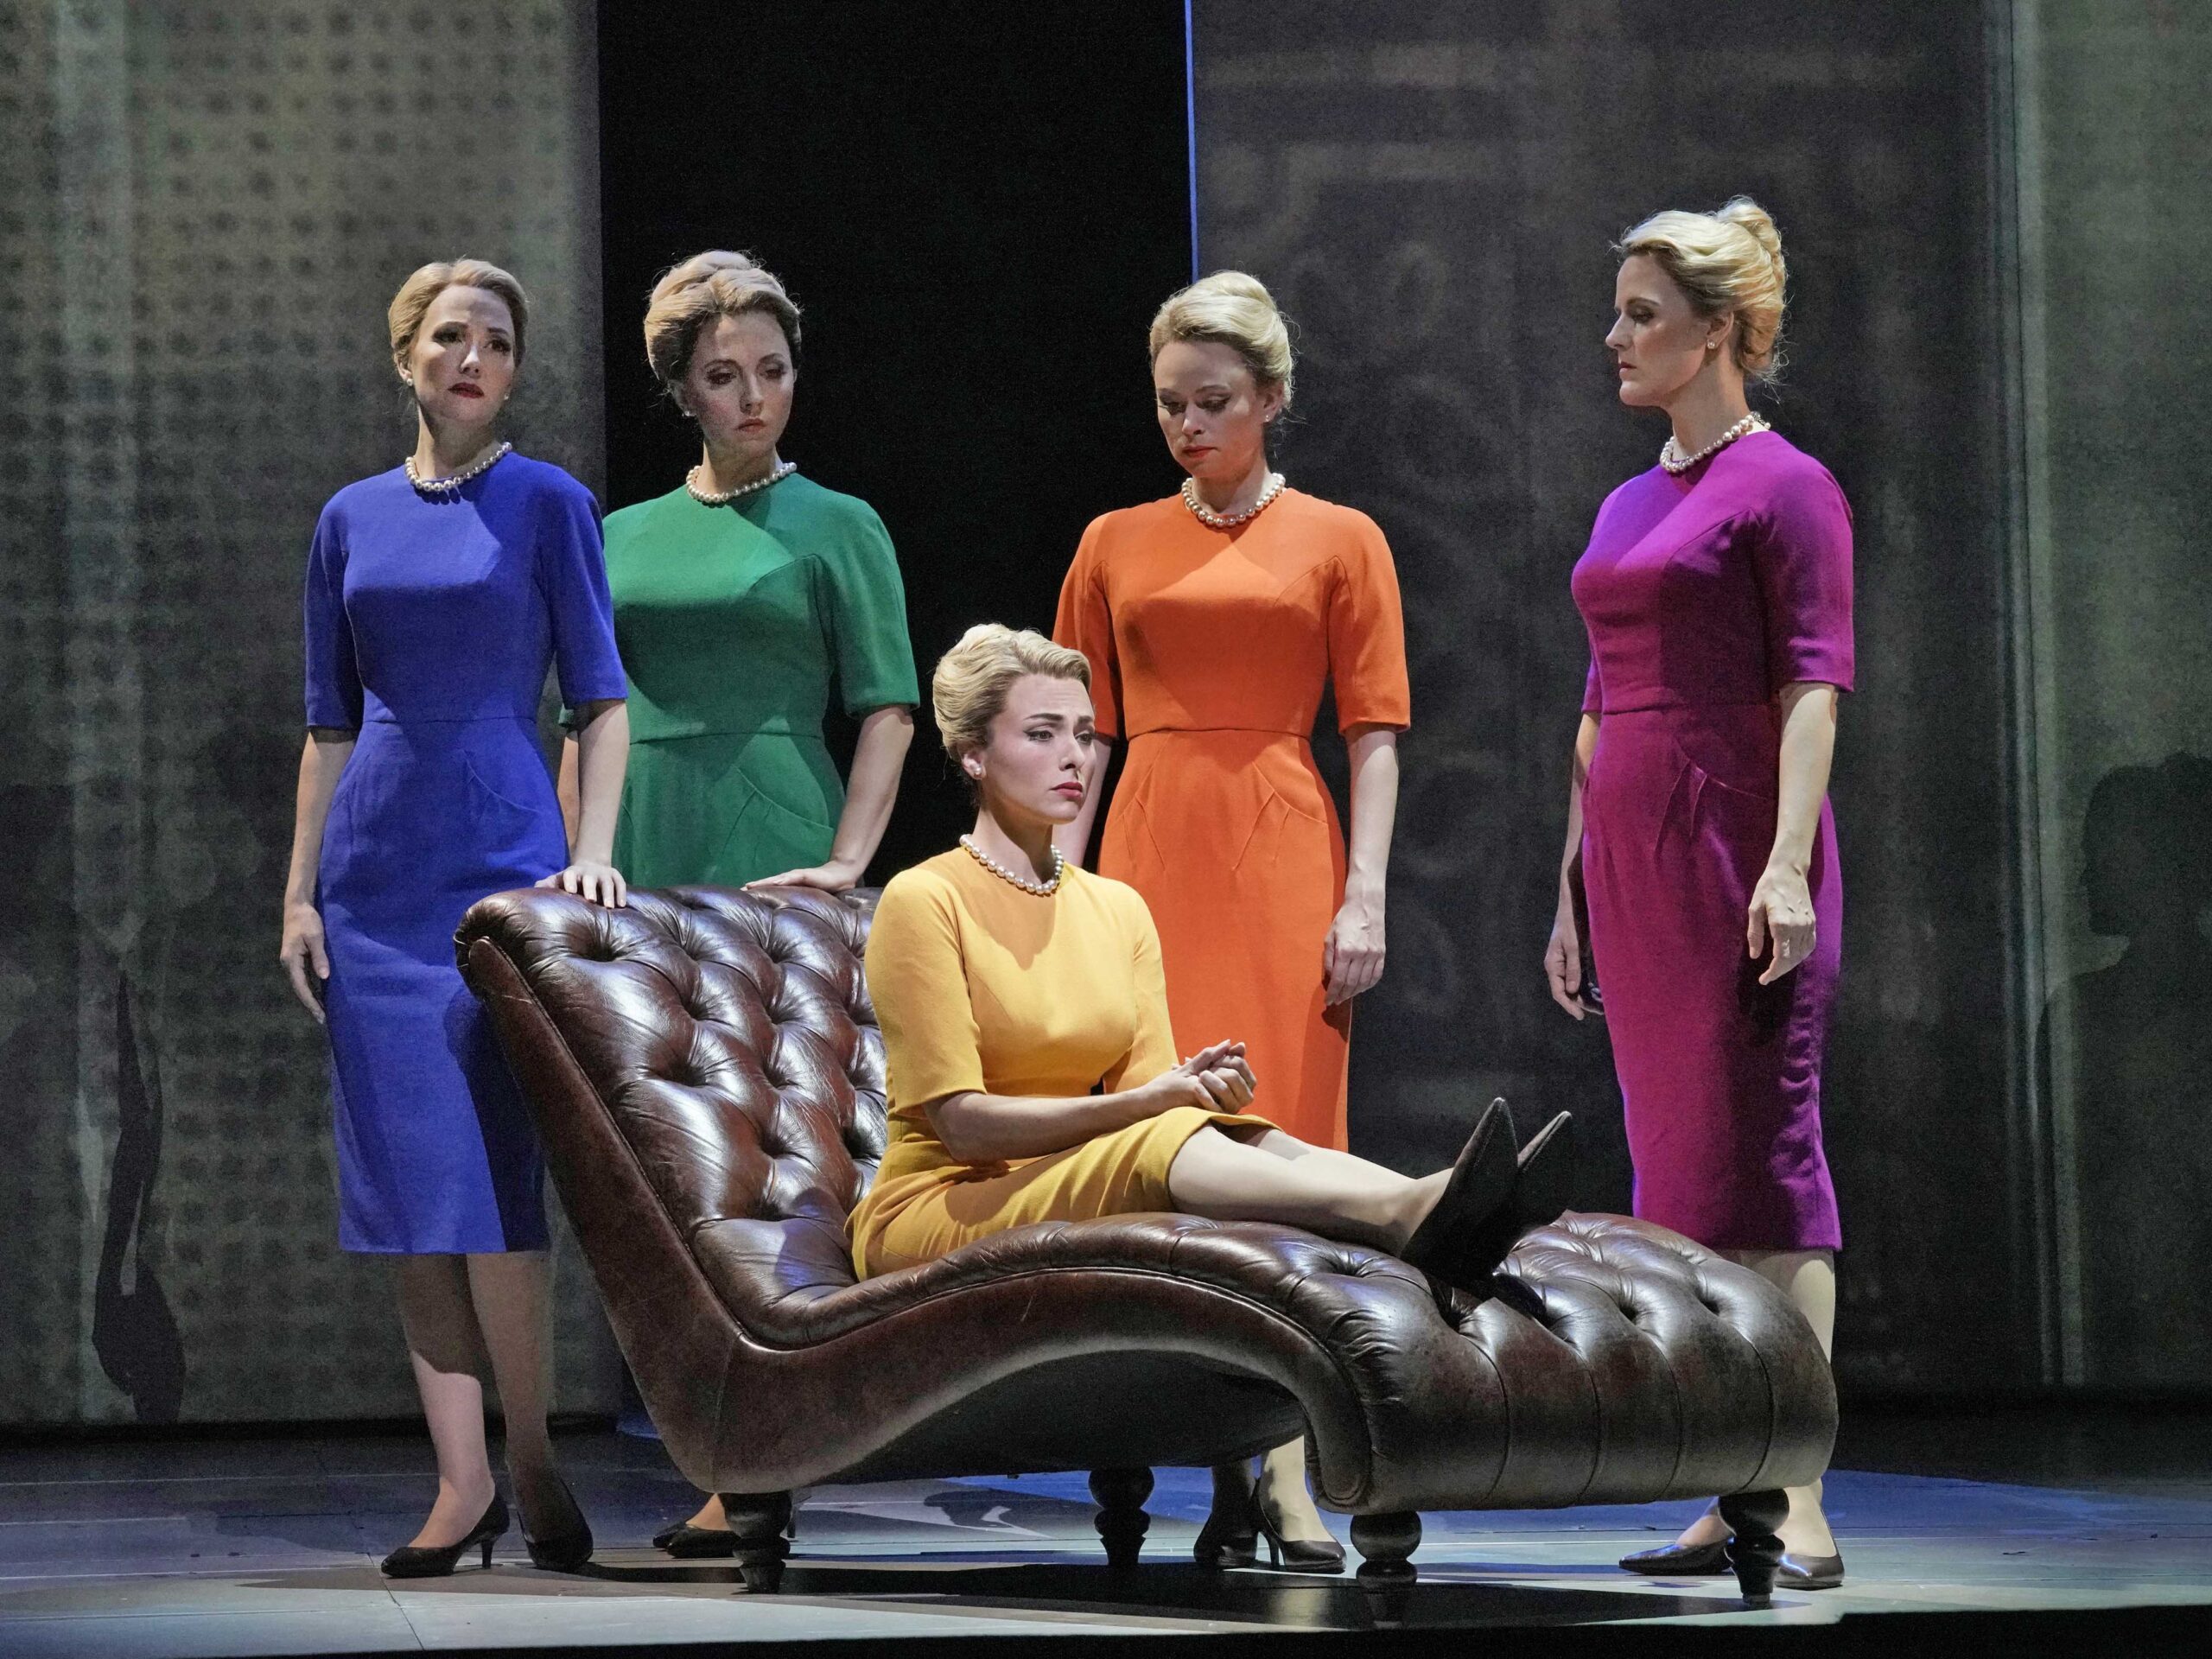 Το βραβευμένο πρόγραμμα “The Met: Live in HD” παρουσιάζει την σύγχρονη όπερα «Μάρνι»